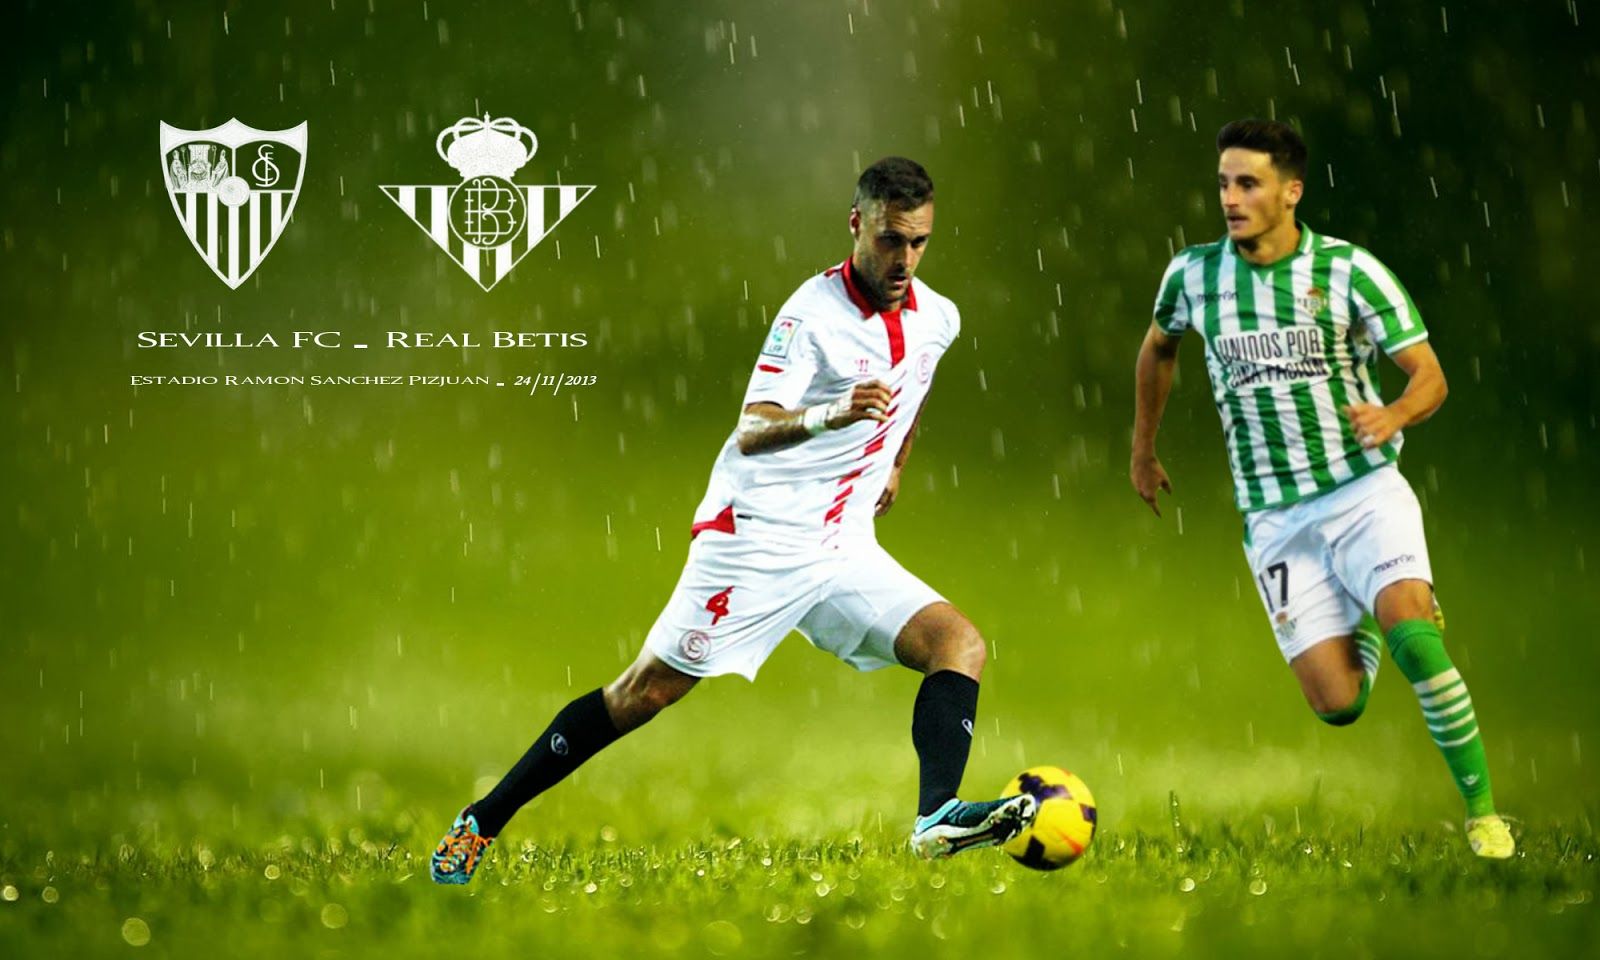 Sevilla FC - Real Betis | Fondos de Sevilla FC